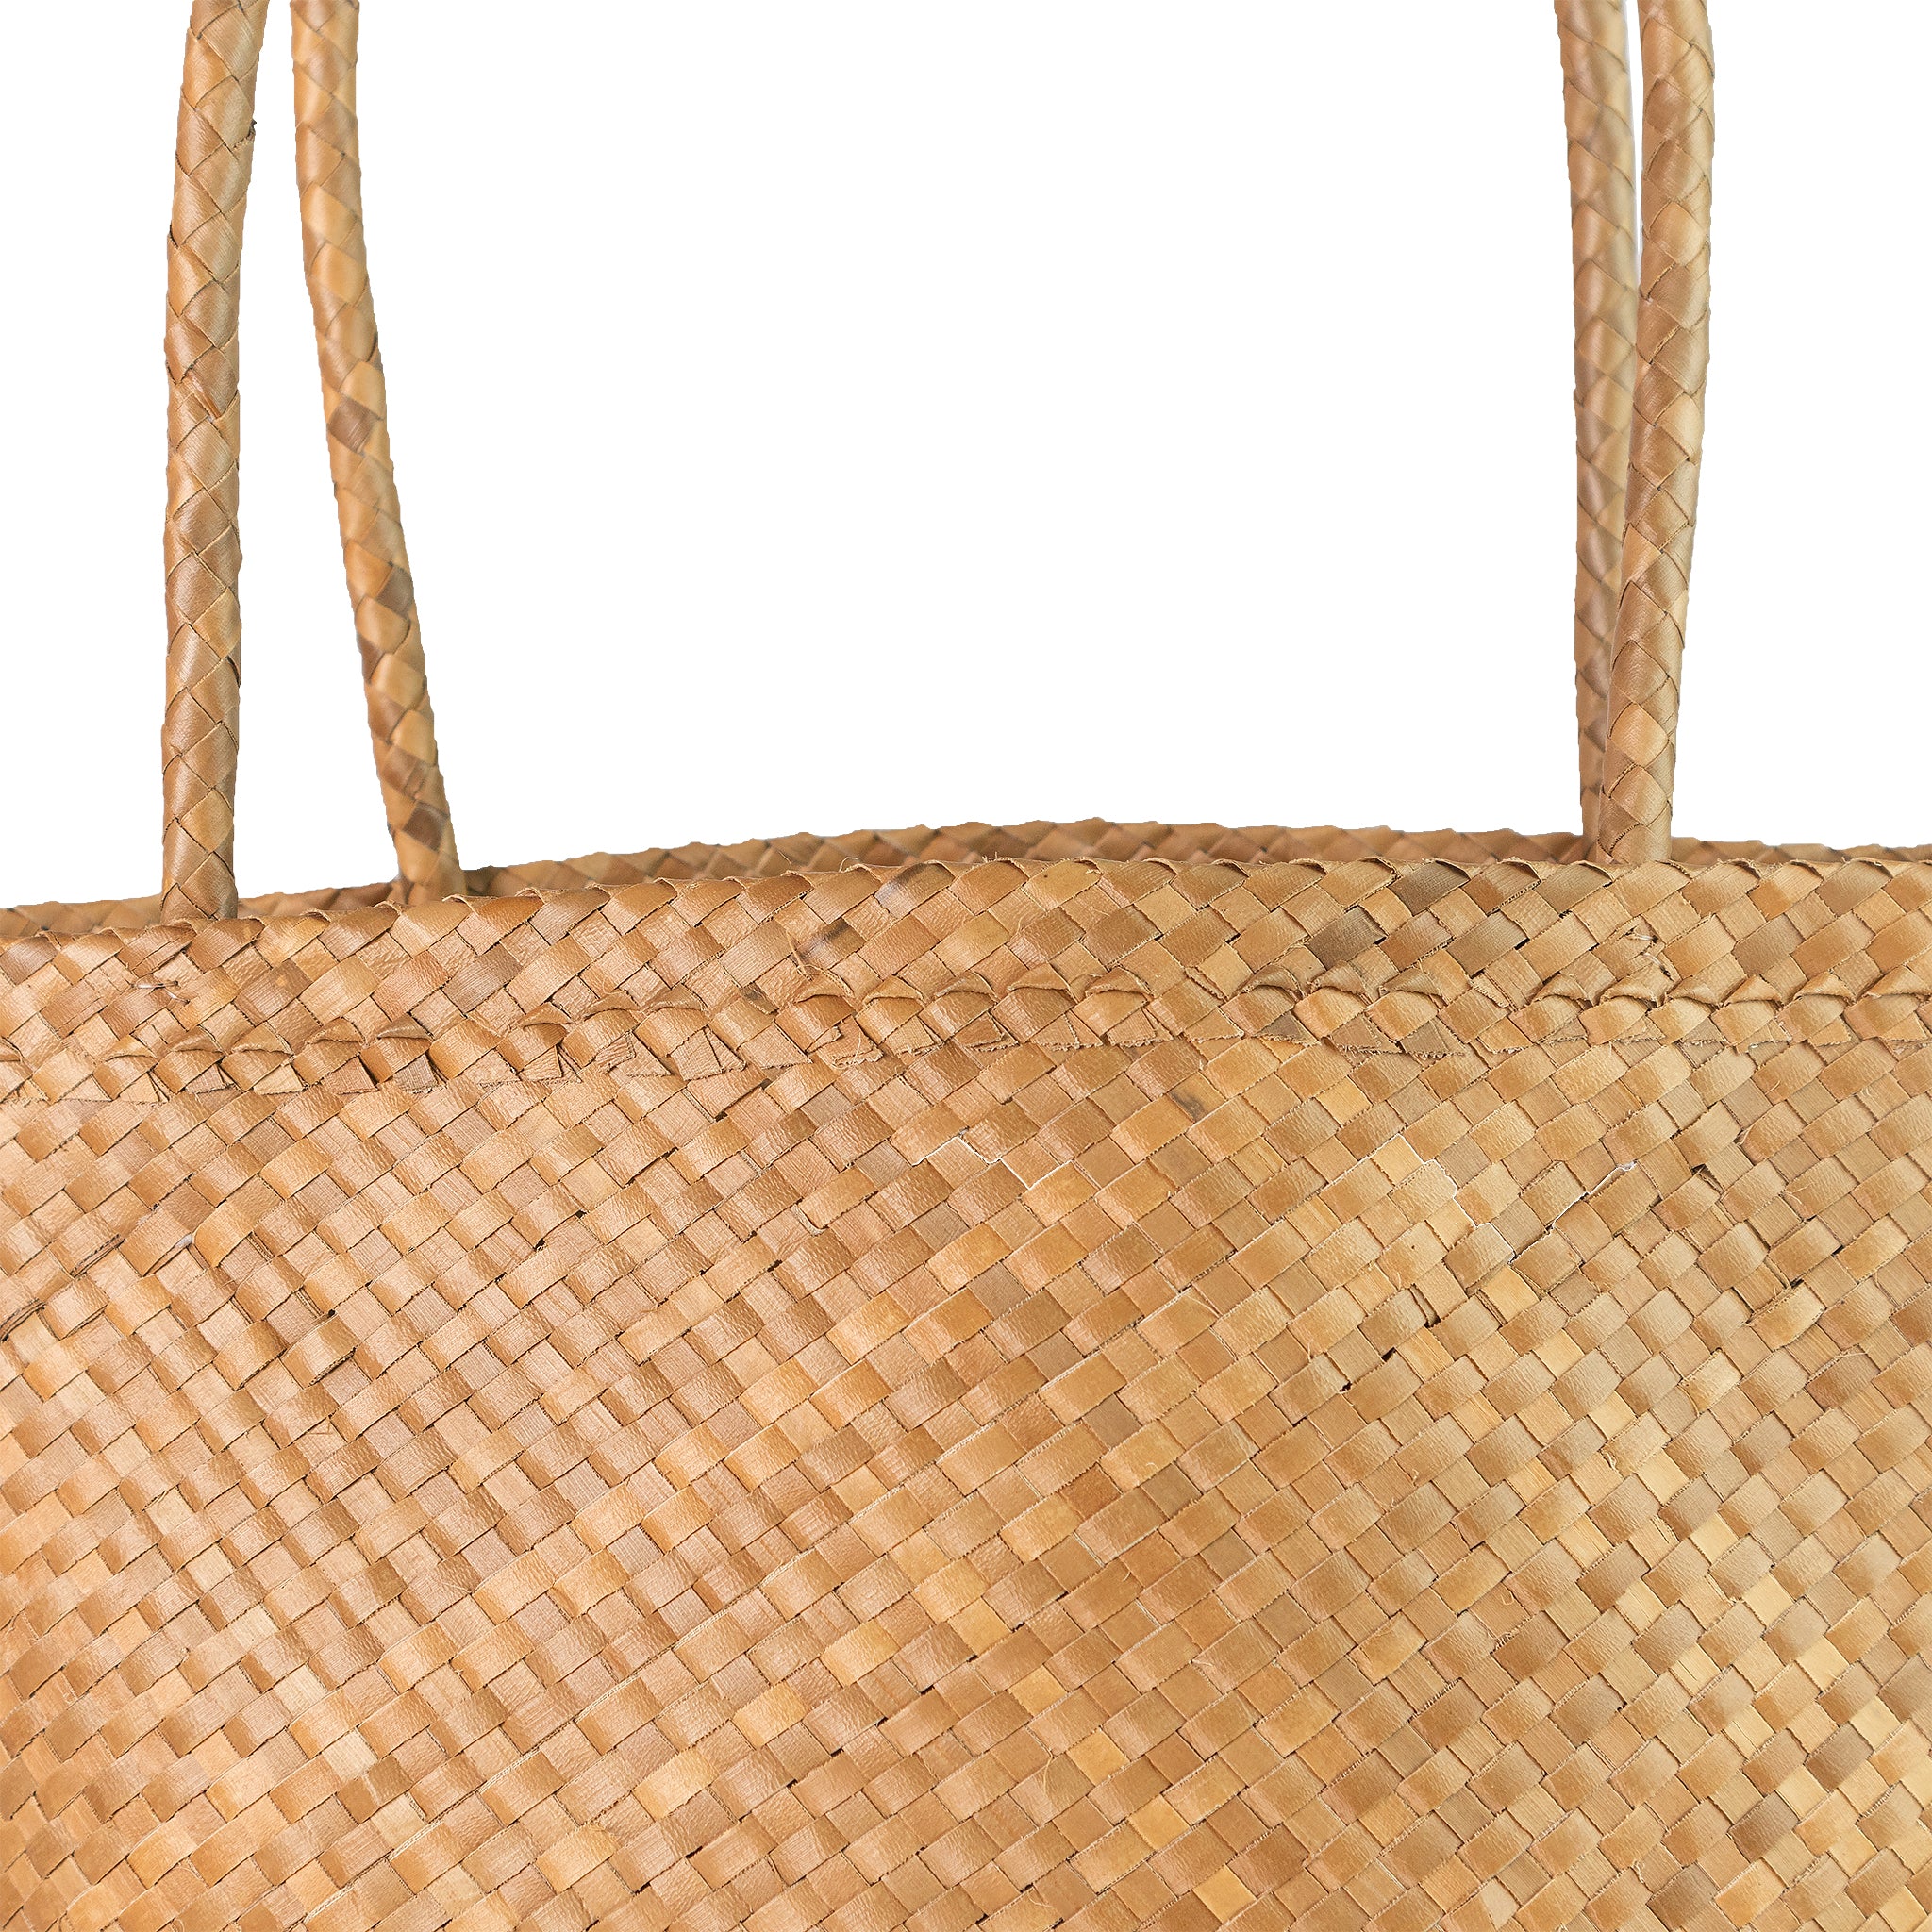 Detail view of tan tote shopper market basket bag